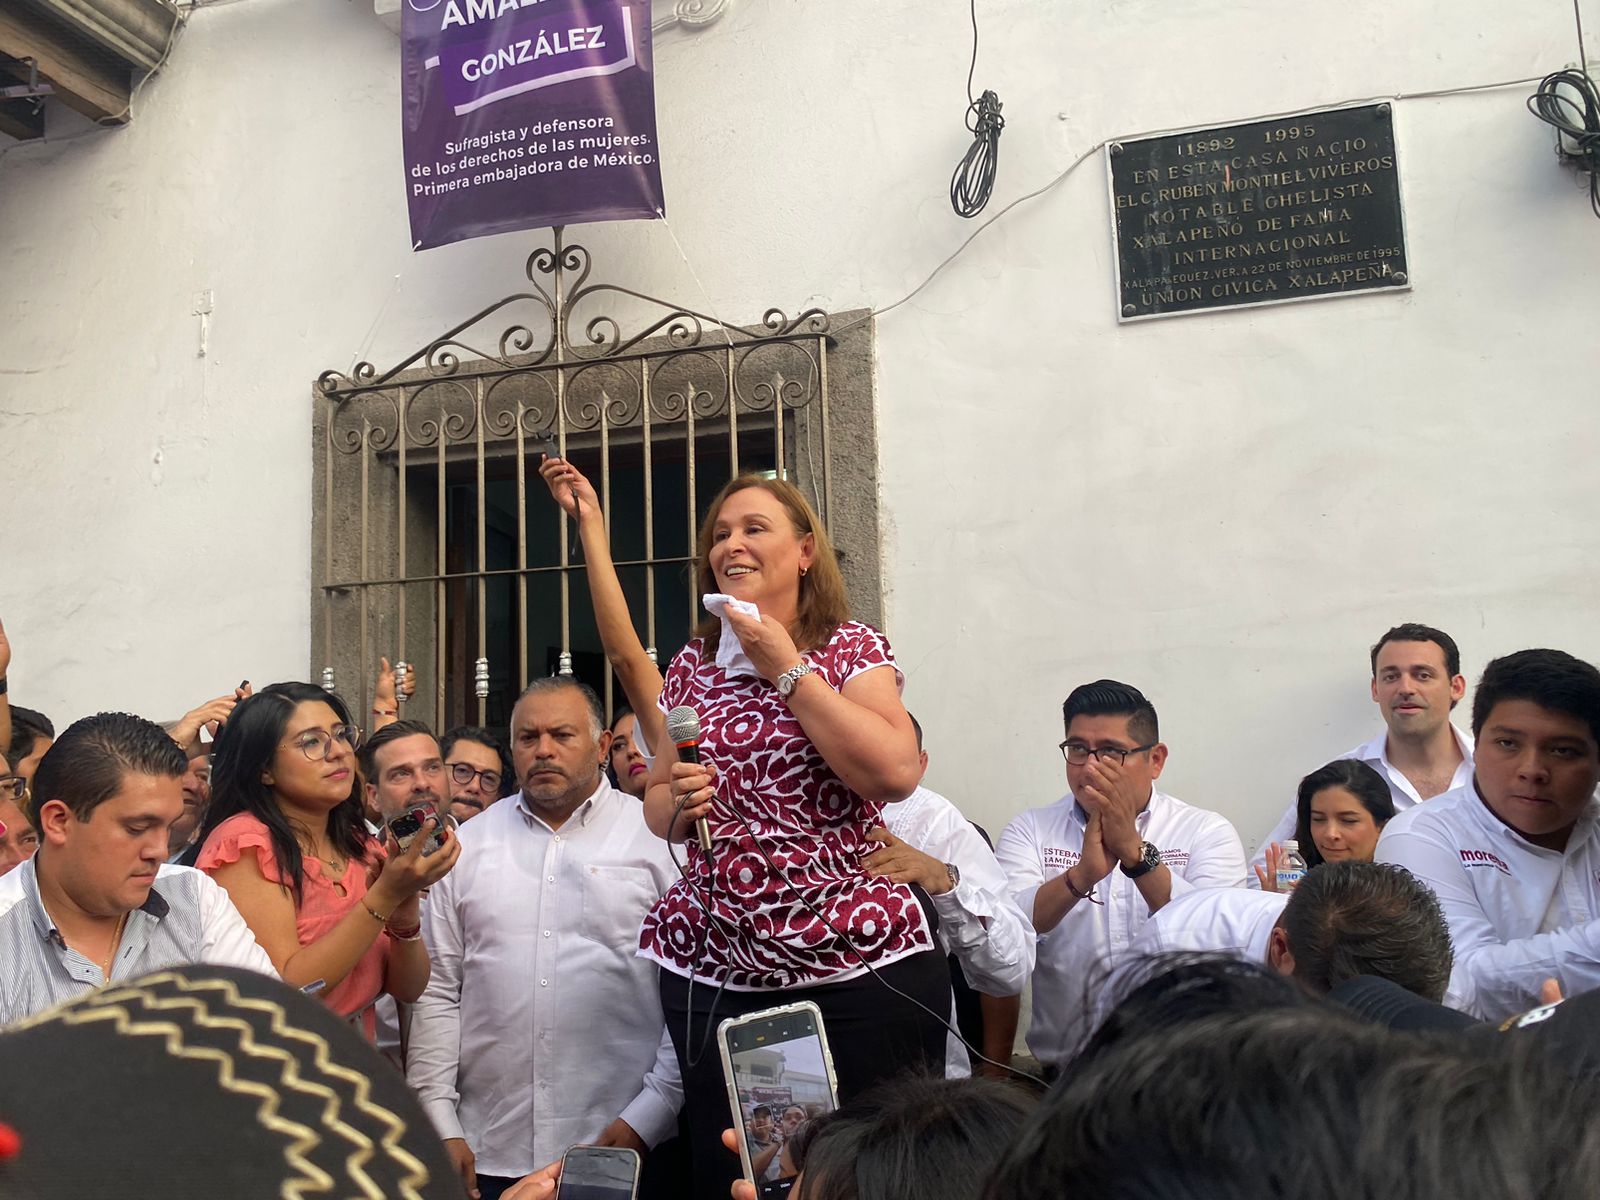 Al ser cuestionada por periodistas si haría su declaración patrimonial, la candidata al gobierno de Veracruz aseguró: “Ni los veo ni los oigo”. (FOTO: Rosalinda Morales/ Posta México) 